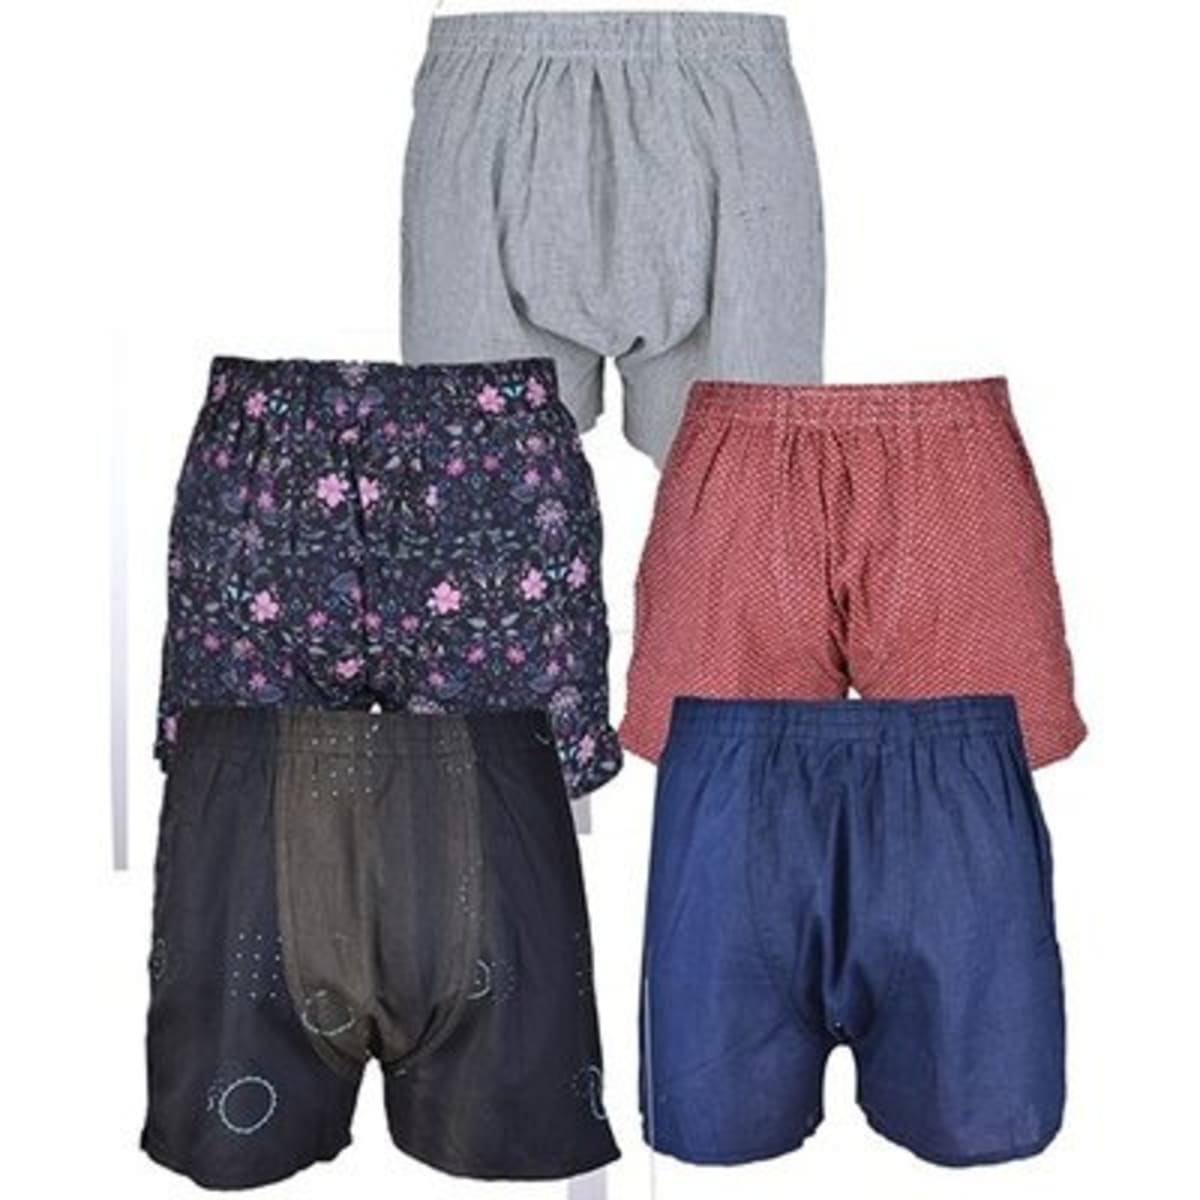 Men's 5-Pack Boxer Shorts - Multicolour